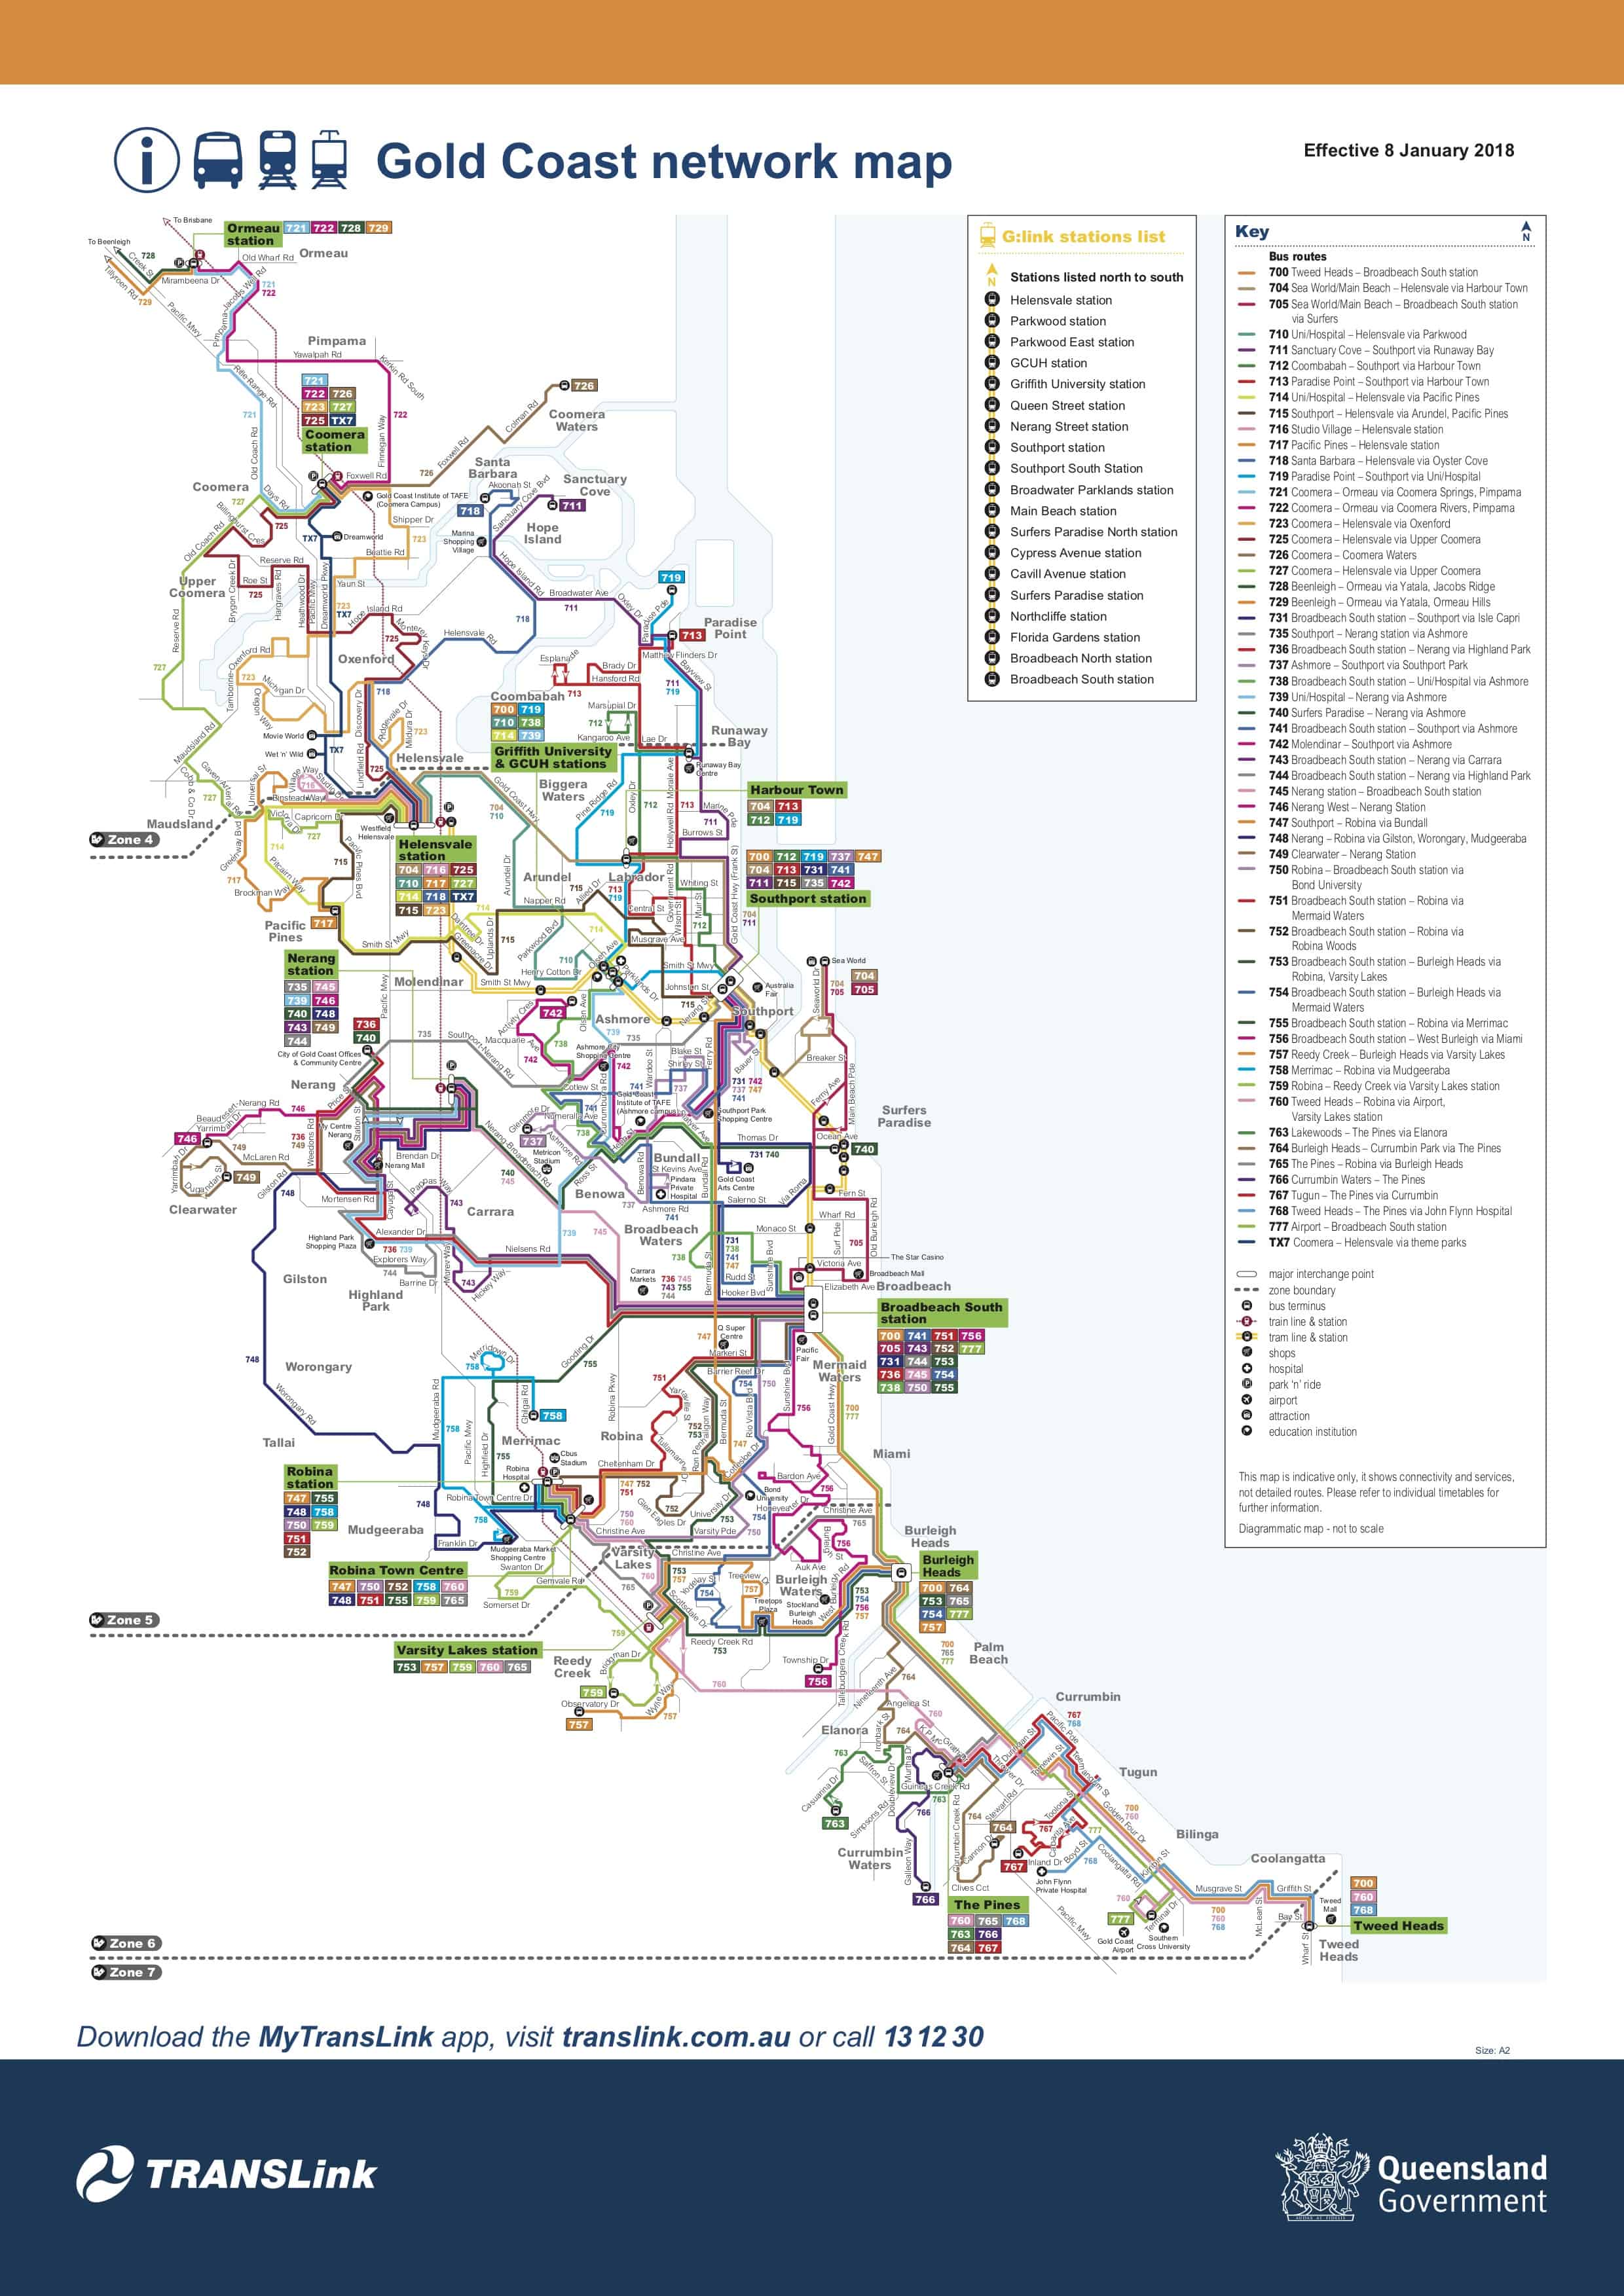 https://translink.com.au/sites/default/files/assets/resources/plan-your-journey/maps/180108-gold-coast-network.pdf